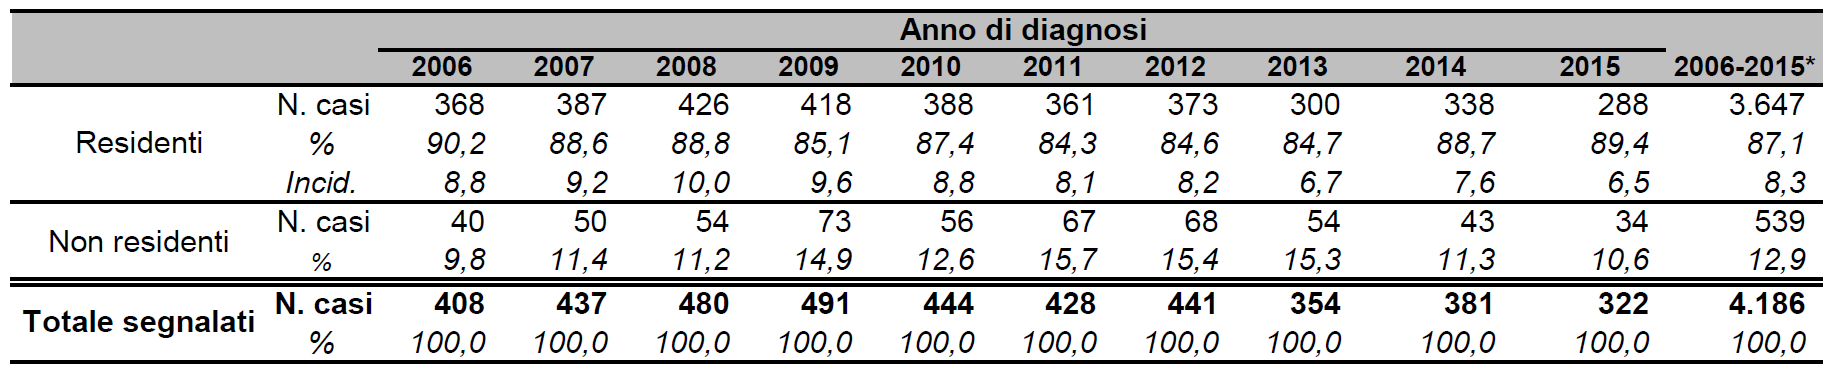 3. Epidemiologia dell infezione da HIV 3.1 Casi segnalati e residenza Nel periodo 2006-2015 sono state notificate in Emilia-Romagna 4.186 nuove diagnosi di infezione da HIV, di cui 3.